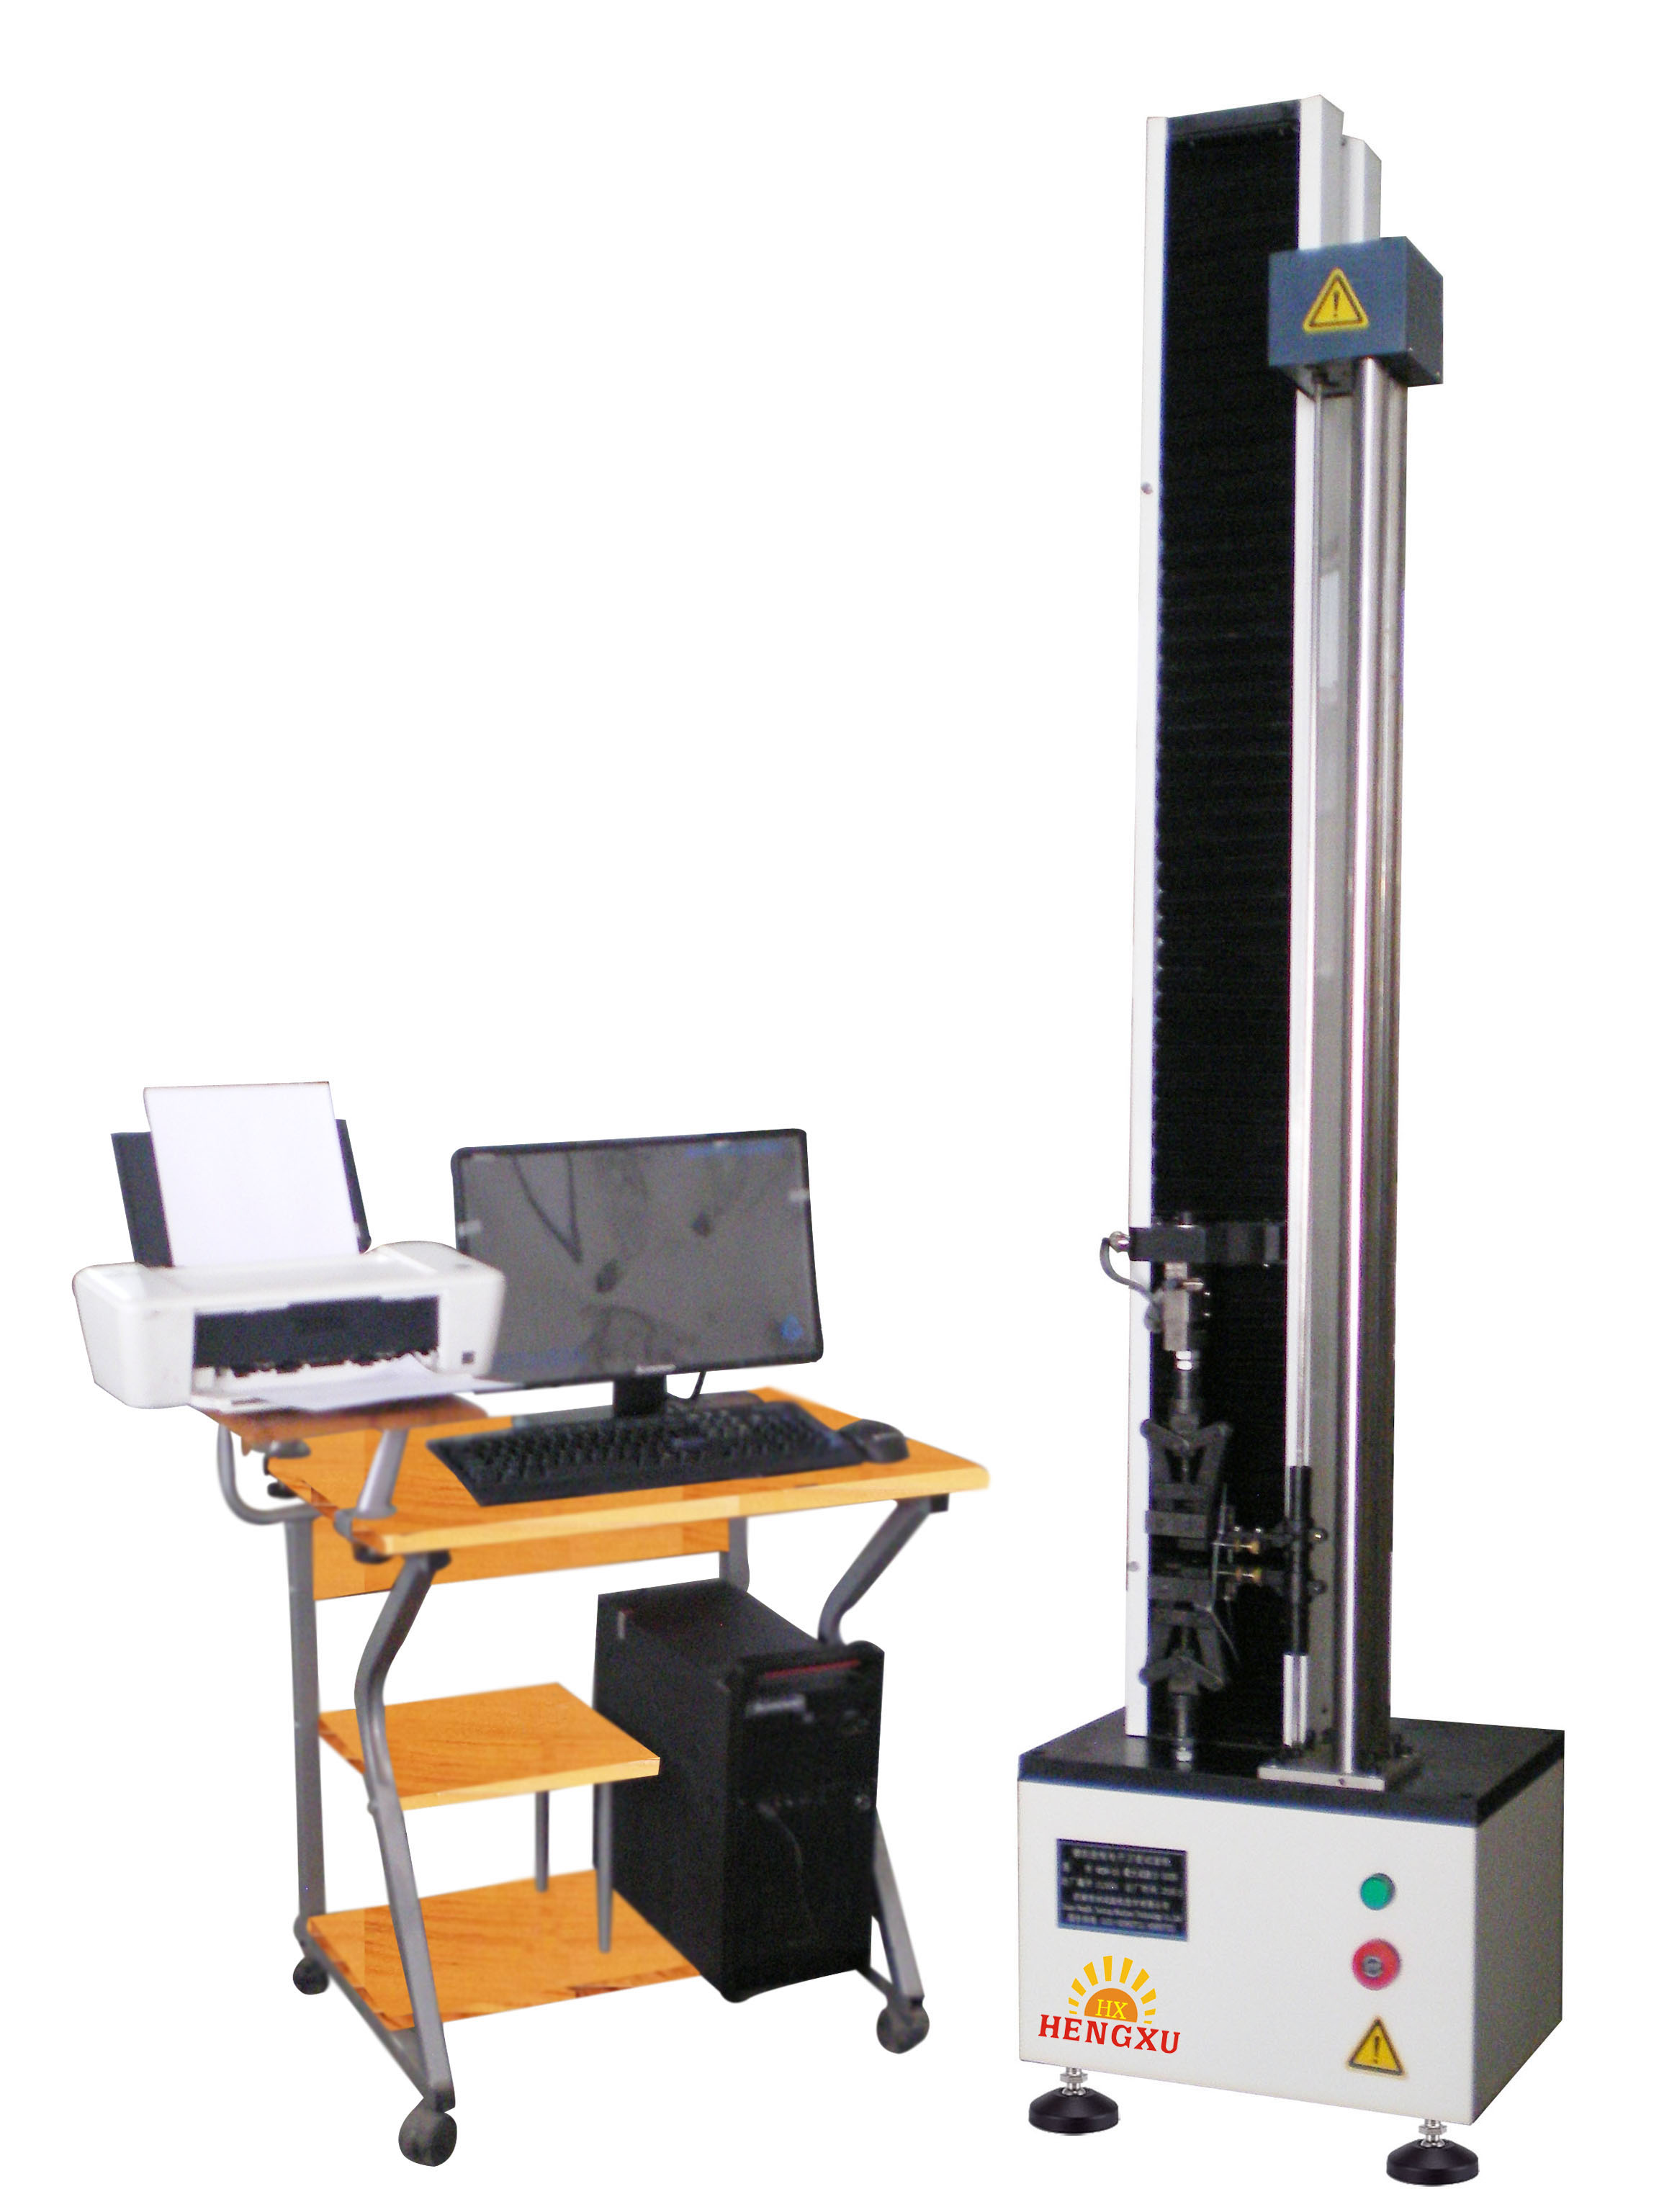 材料试验机 橡胶拉力机 山东专业生产恒旭HDW-5橡胶拉力测试仪2